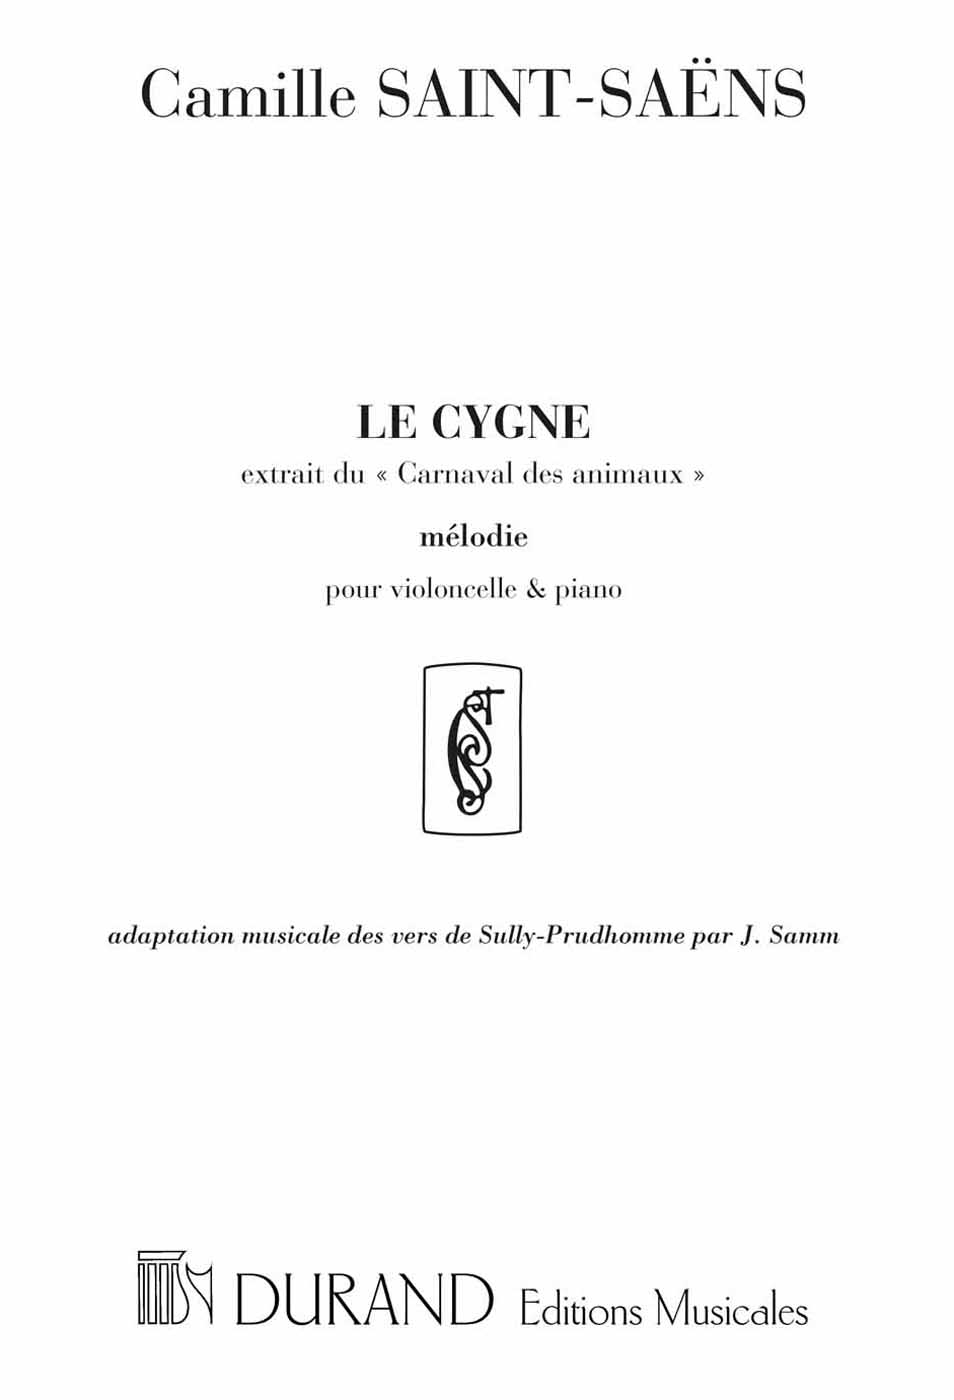 Le Cygne, extrait du Carnaval des animaux, adaptation musicale des vers de Sully Prudhomme par J. Samm, violoncelle et piano